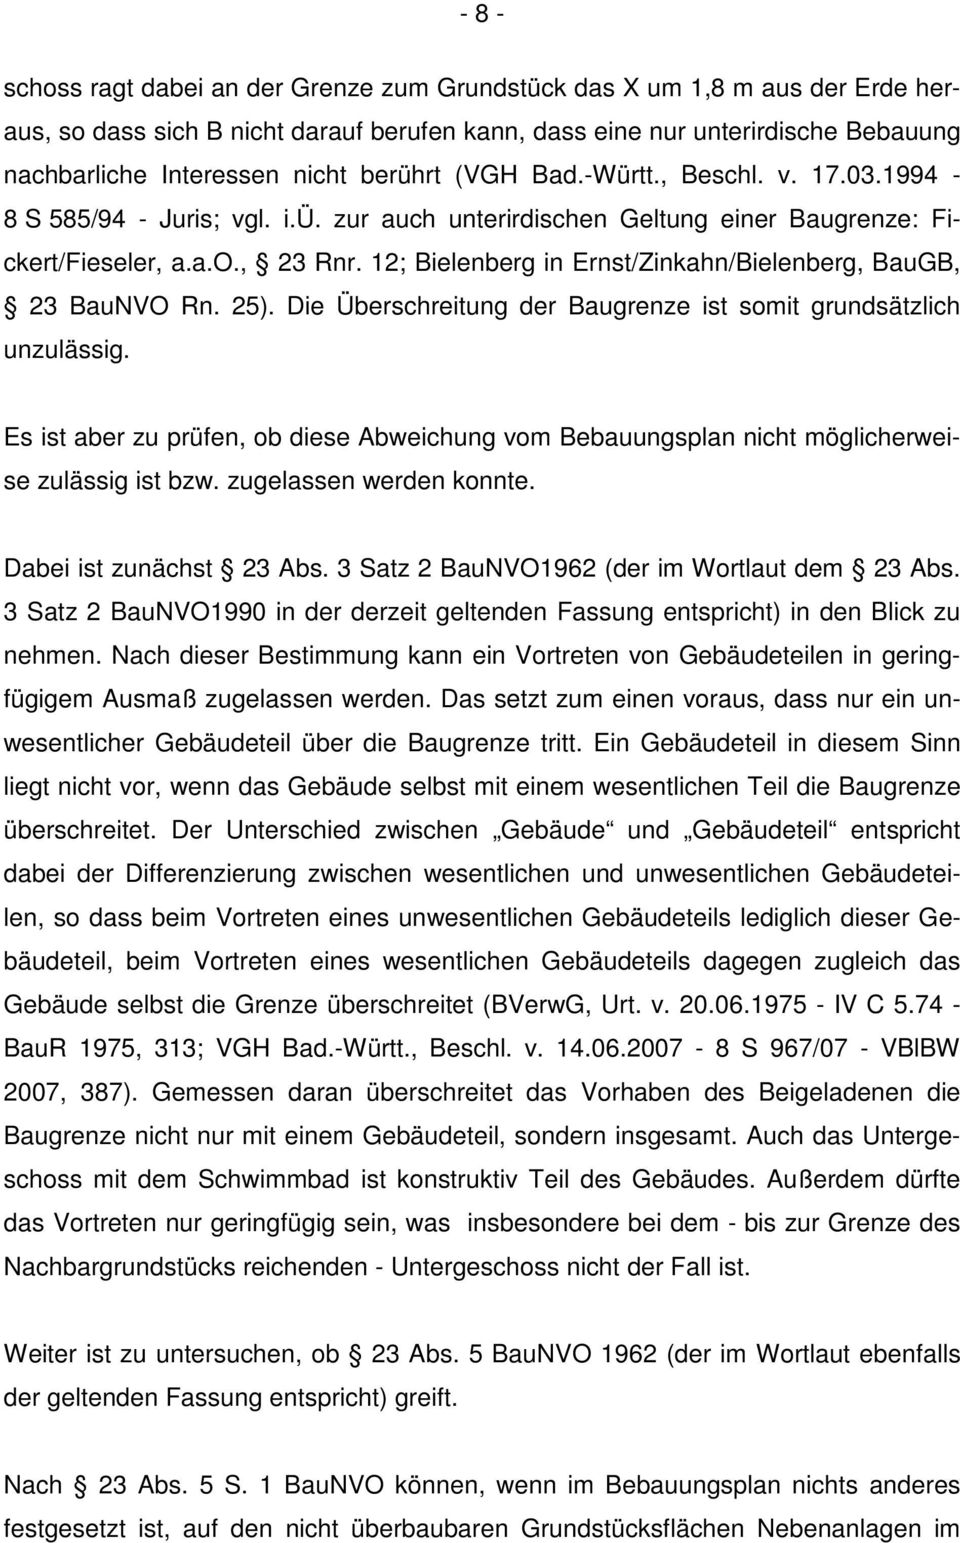 12; Bielenberg in Ernst/Zinkahn/Bielenberg, BauGB, 23 BauNVO Rn. 25). Die Überschreitung der Baugrenze ist somit grundsätzlich unzulässig.